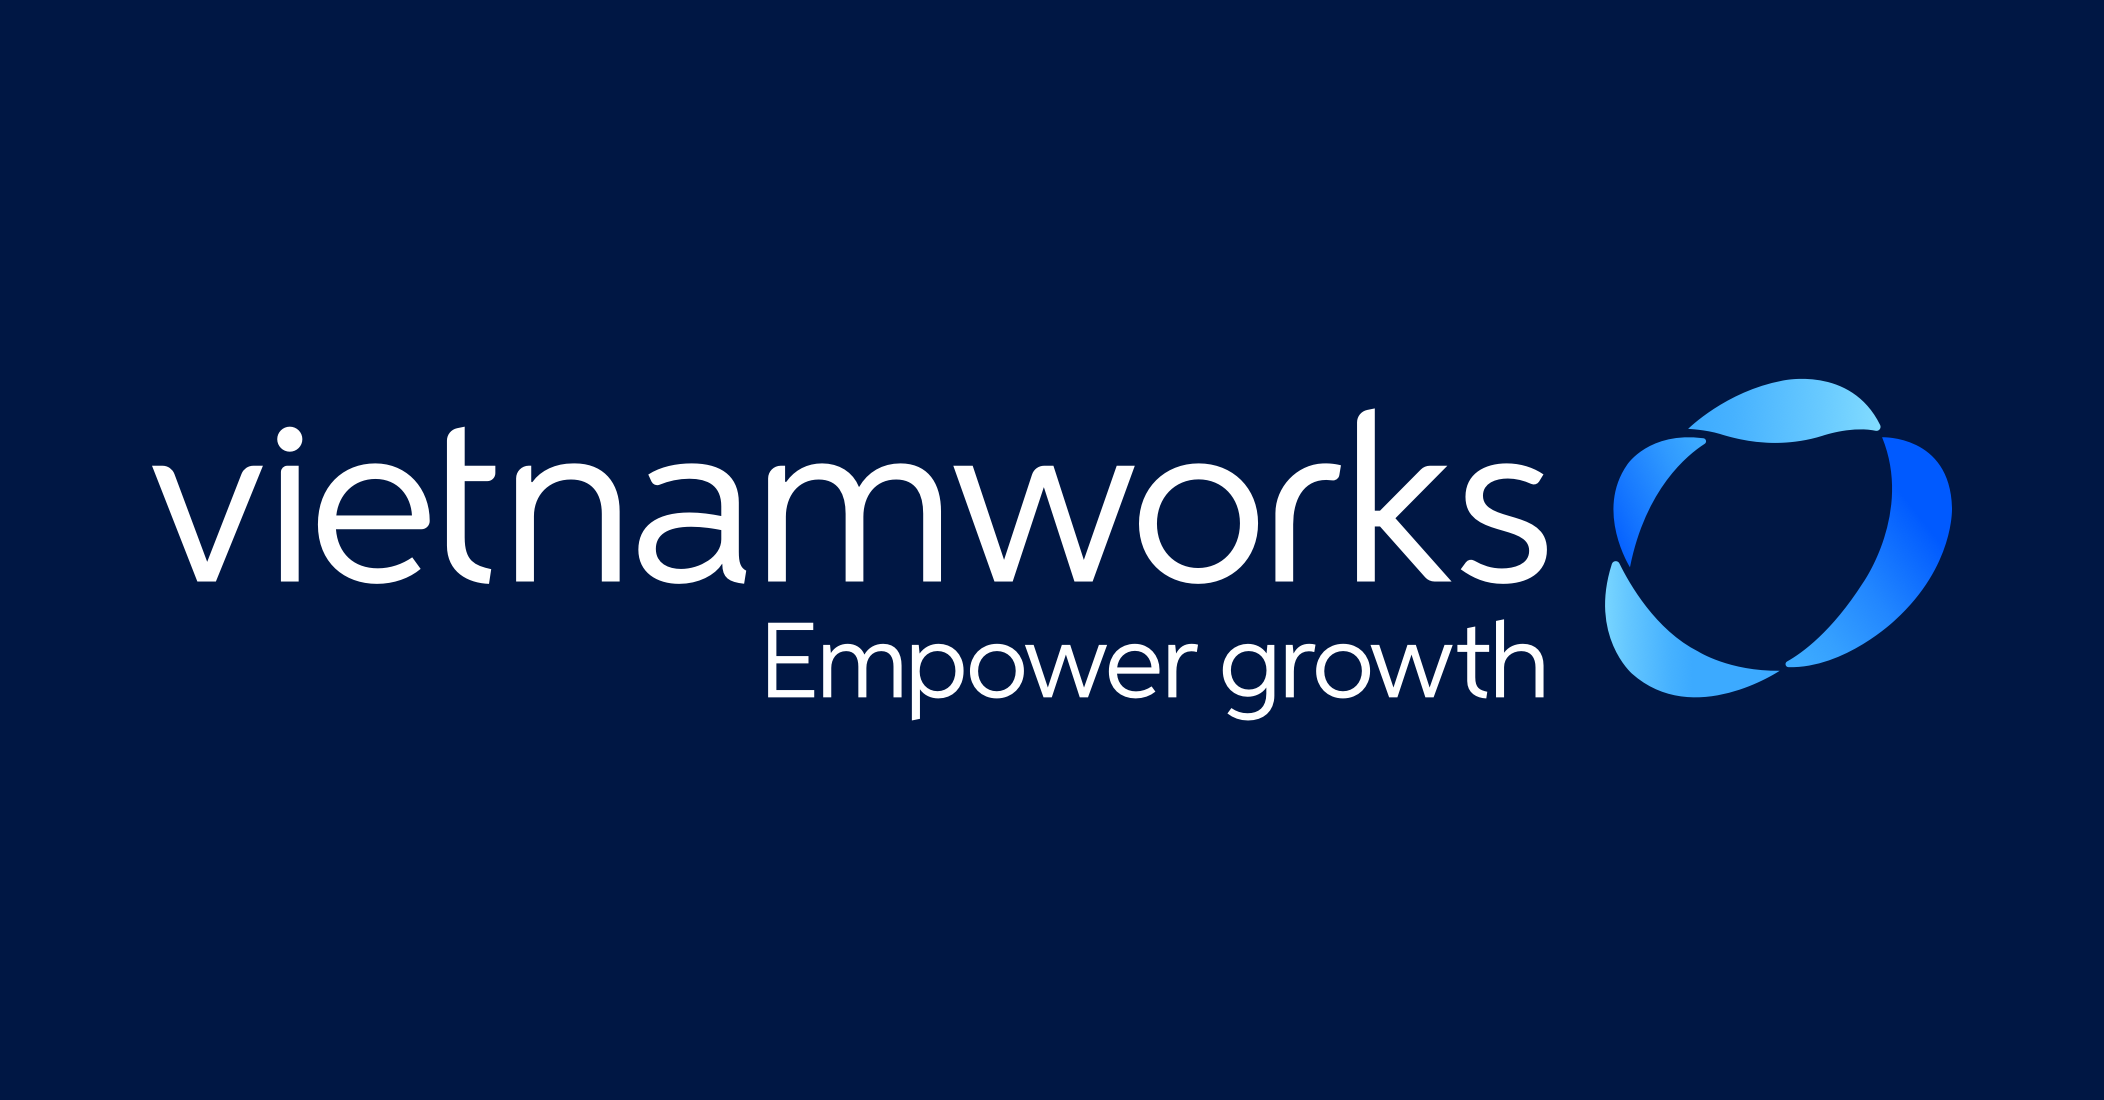 Vietnamworks là website tuyển dụng cung cấp cho nhà tuyển dụng và ứng viên một nơi để kết nối